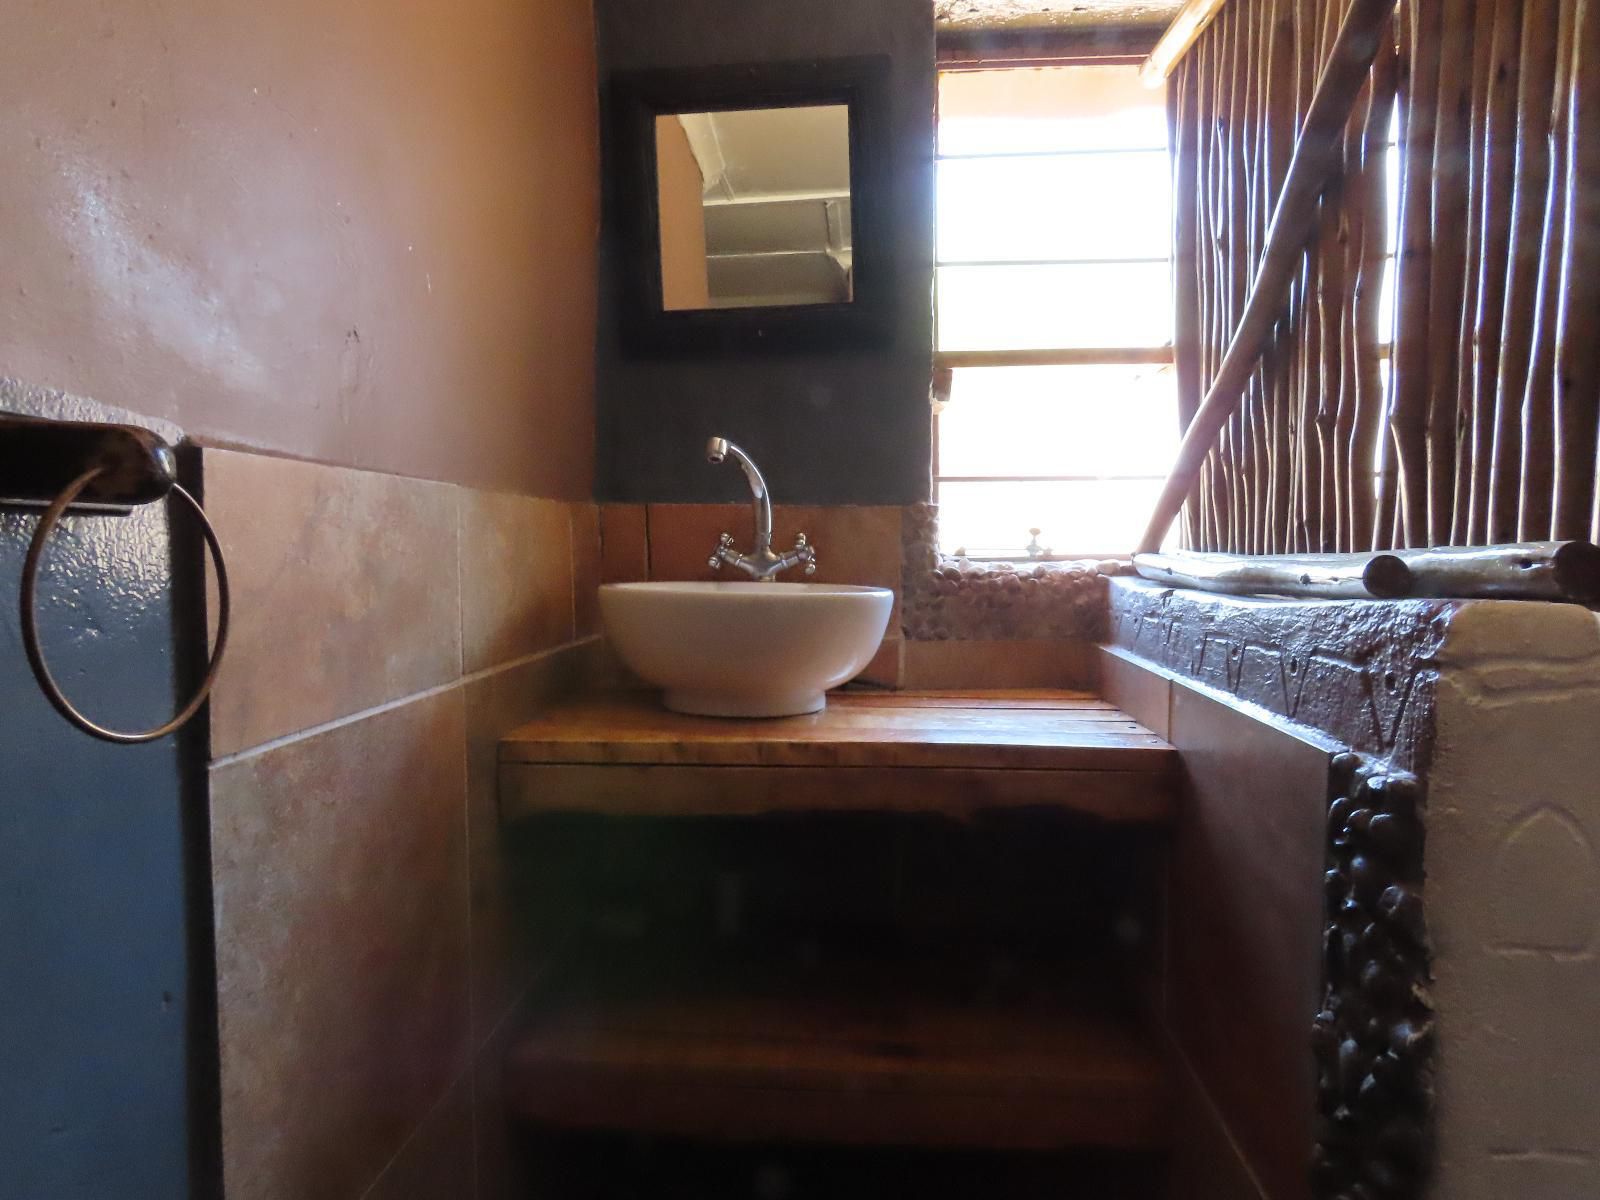 Uitvlugt Resort Rust De Winter Limpopo Province South Africa Bathroom